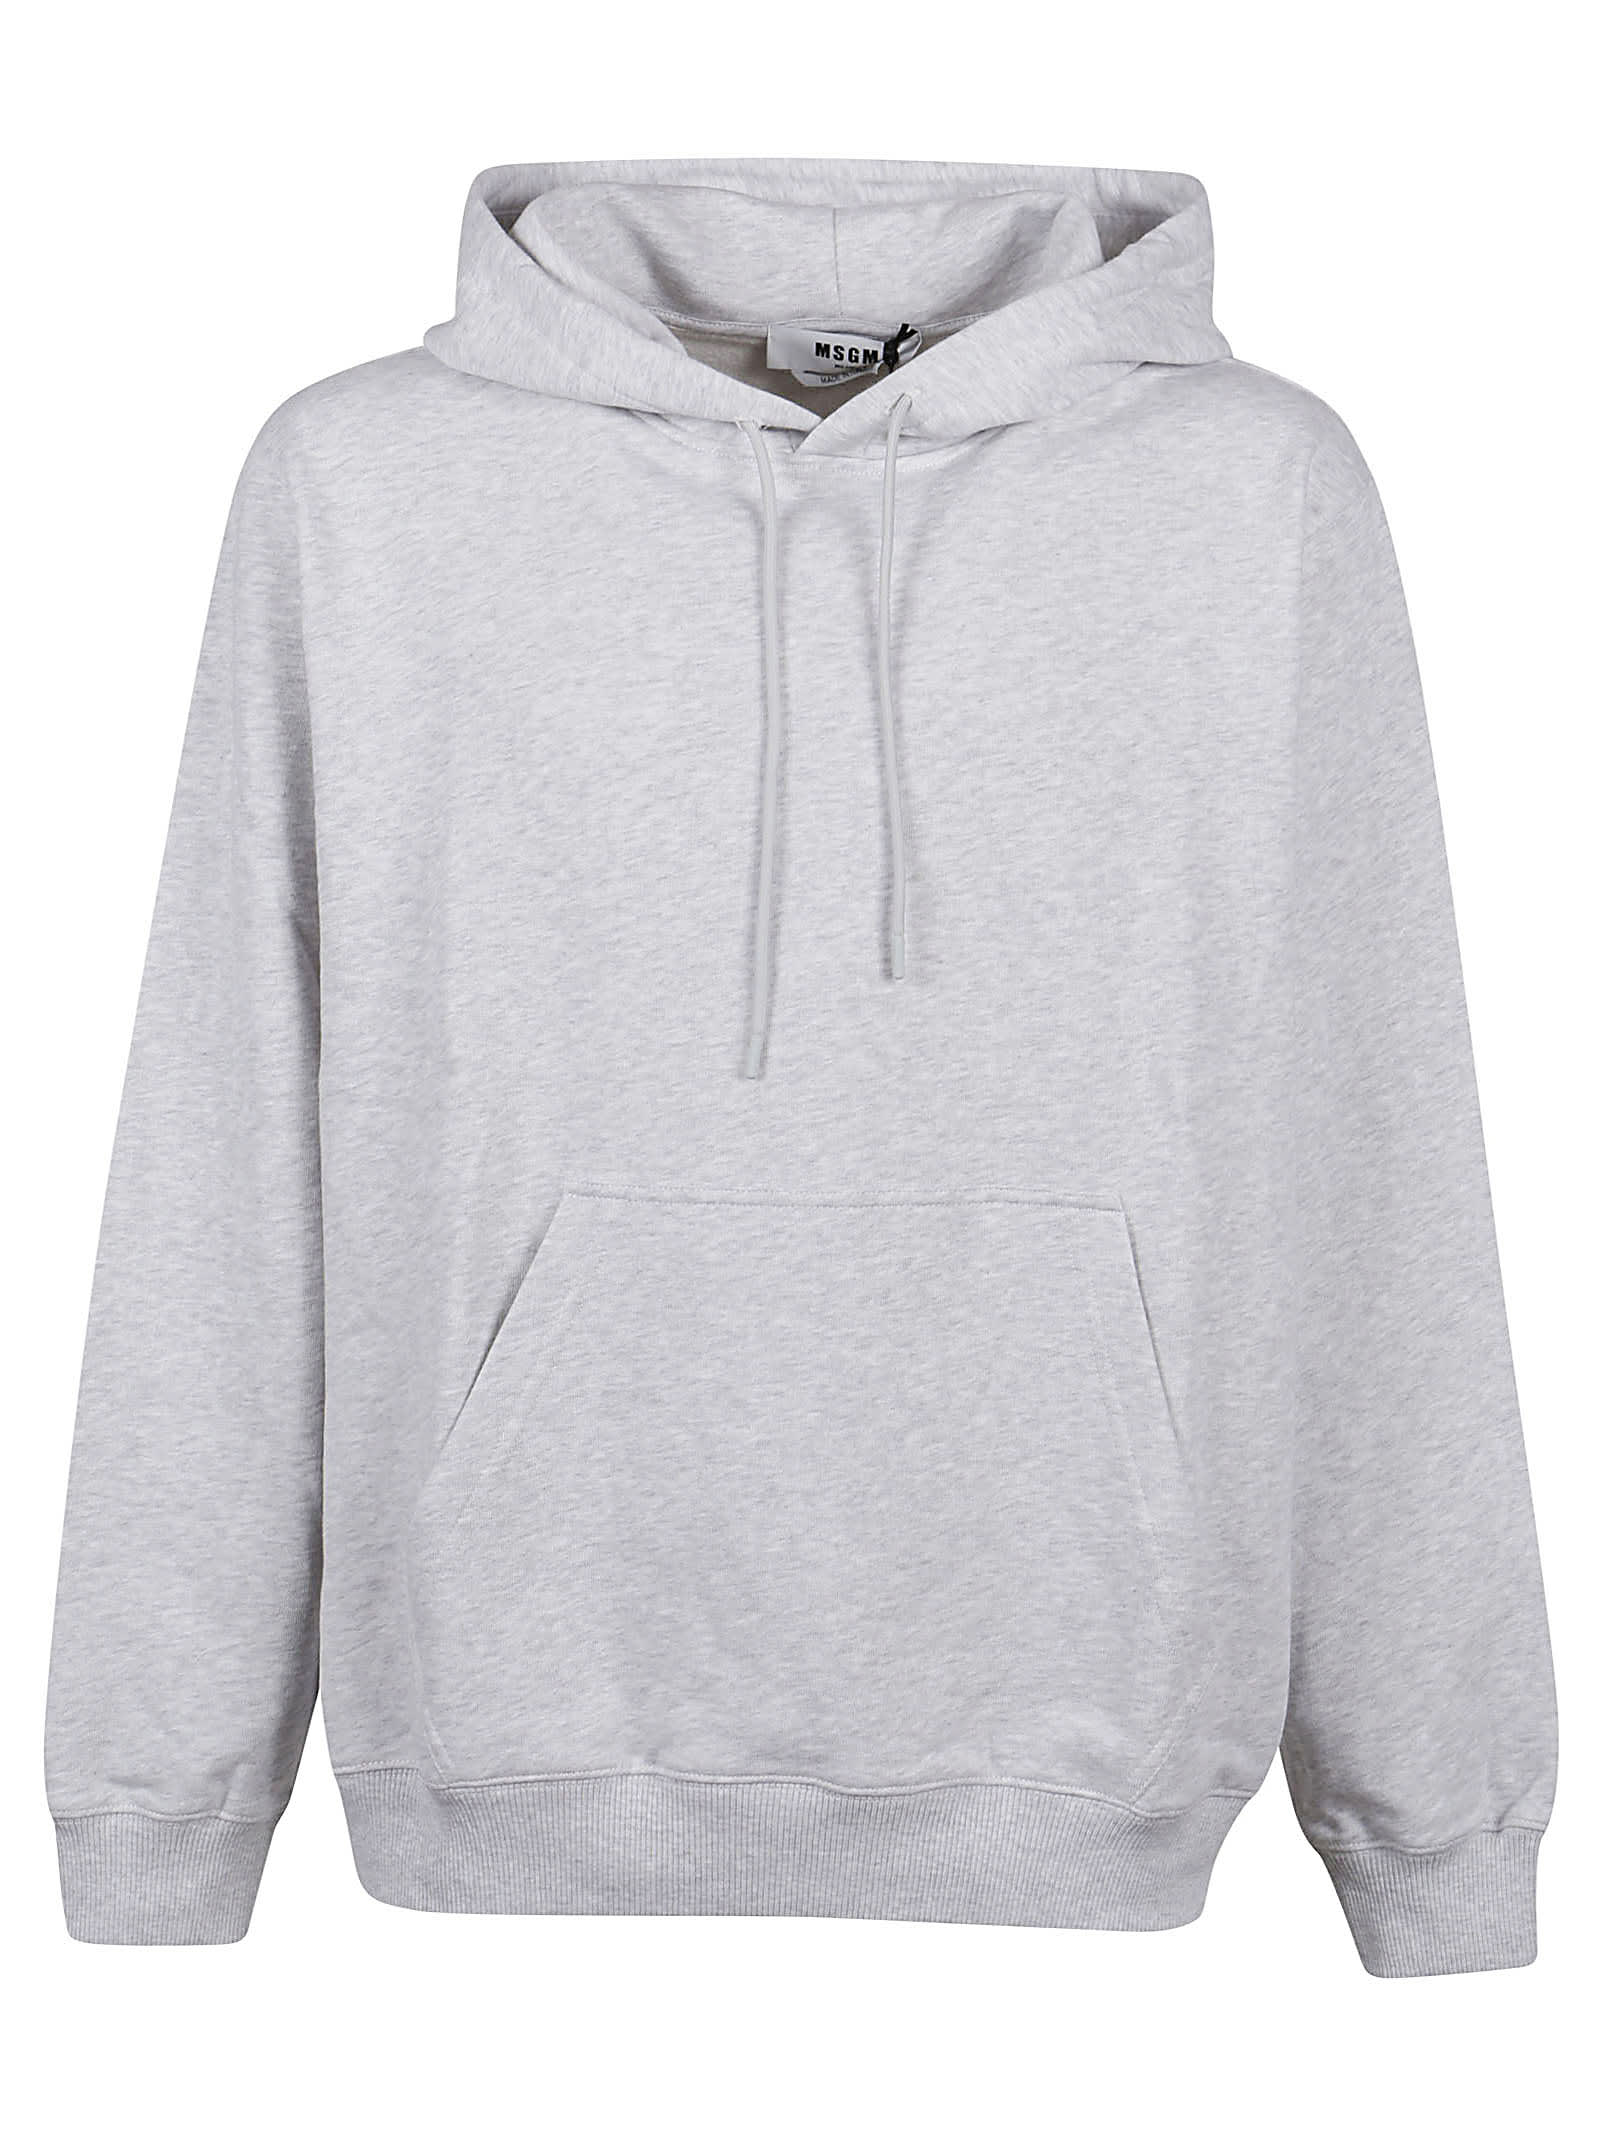 Msgm Oversized Maxilogo Sweatshirt In Light Grey Melange